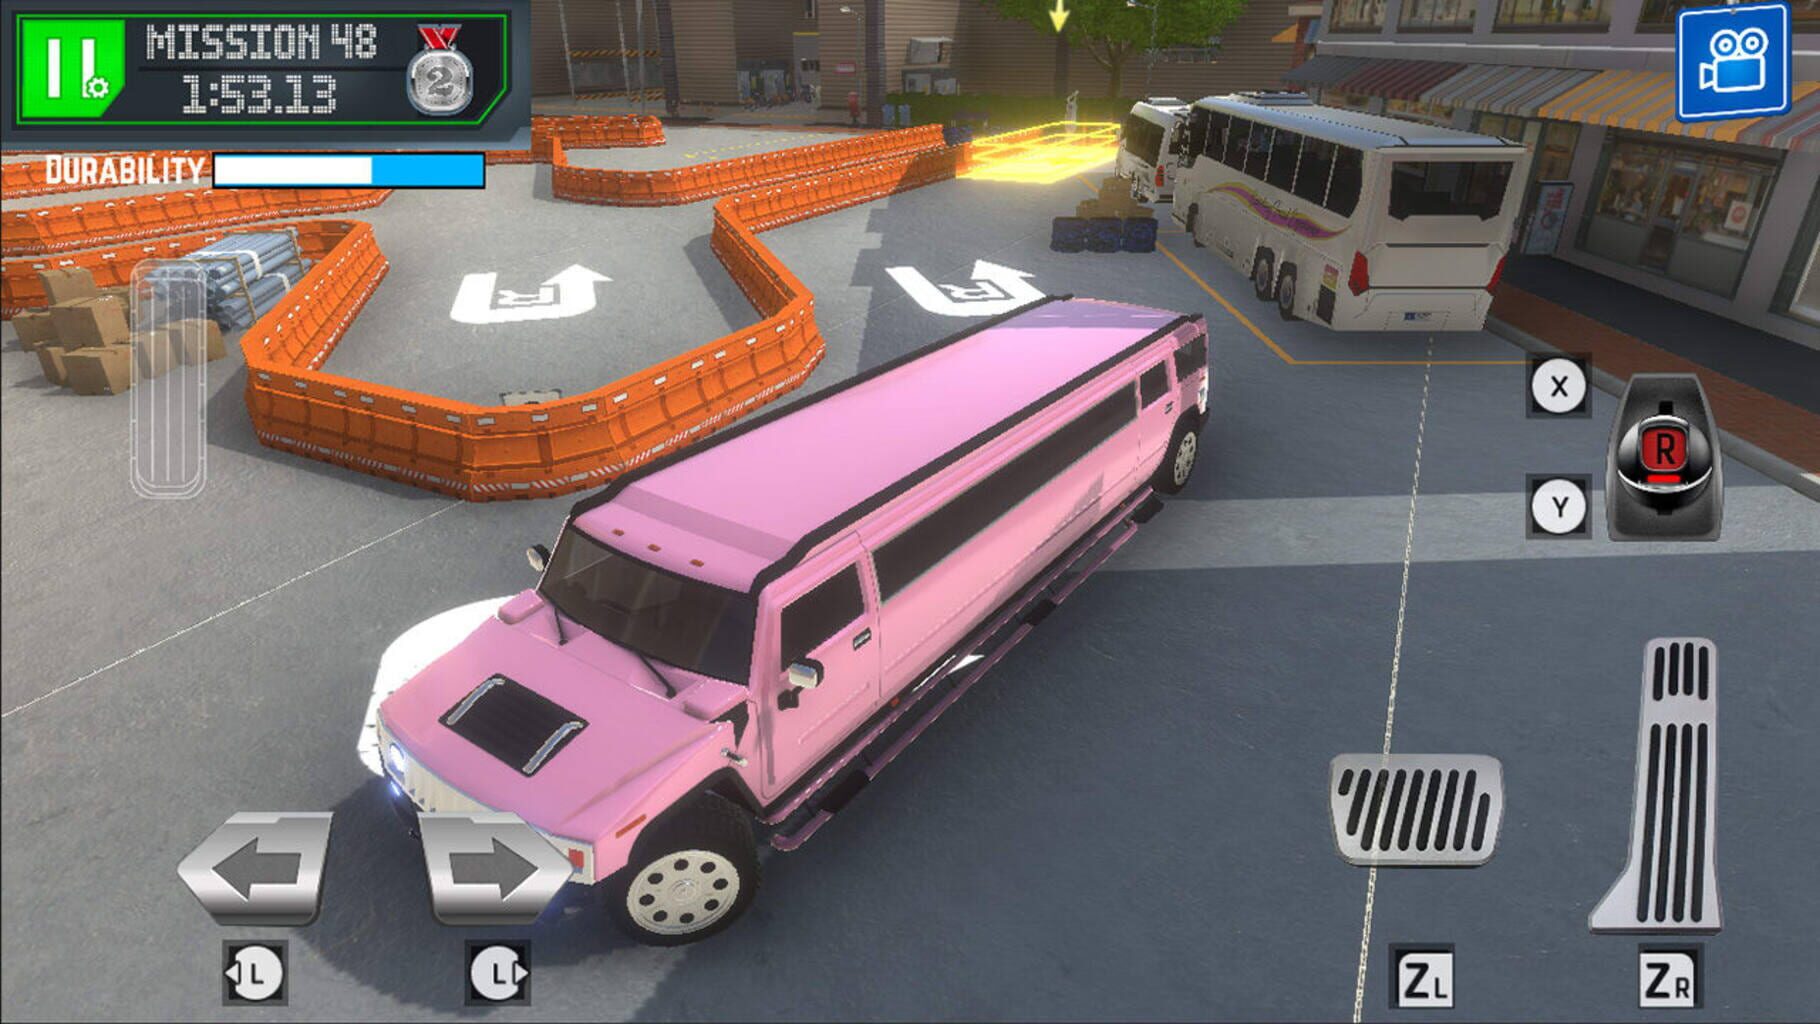 City Bus Driving Simulator screenshot